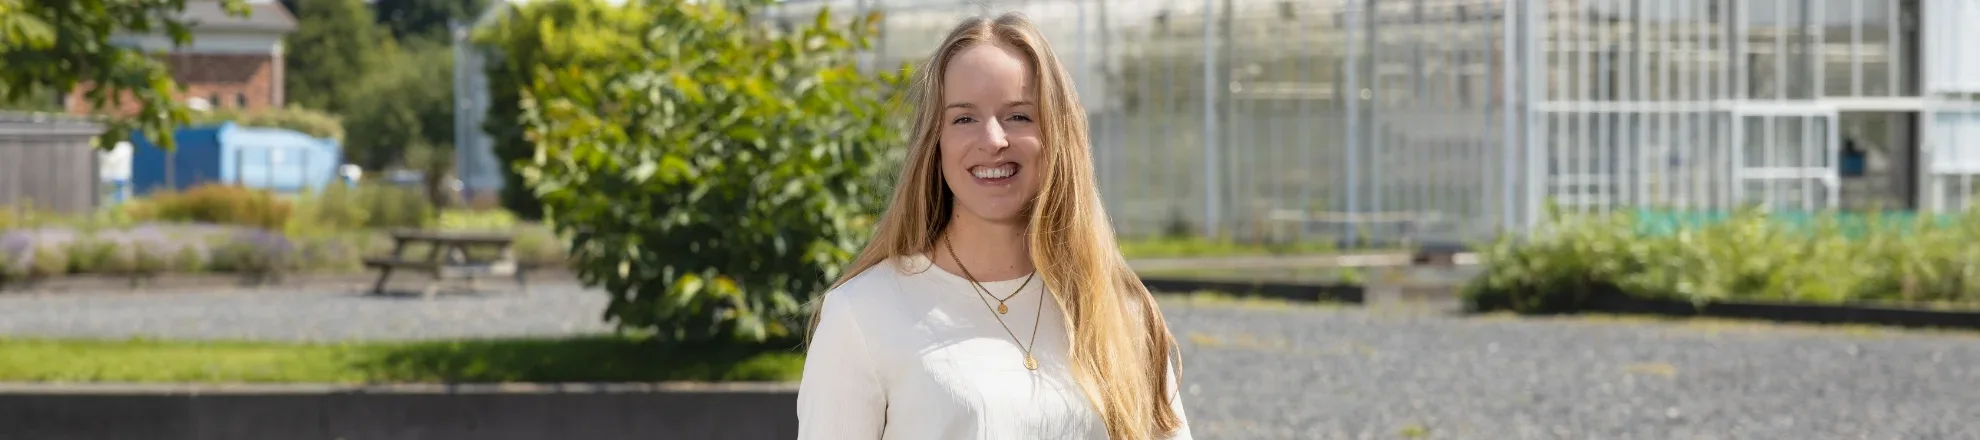 Mandy van Vugt werkt als projectmanager bij Aeres Hogeschool Dronten. 